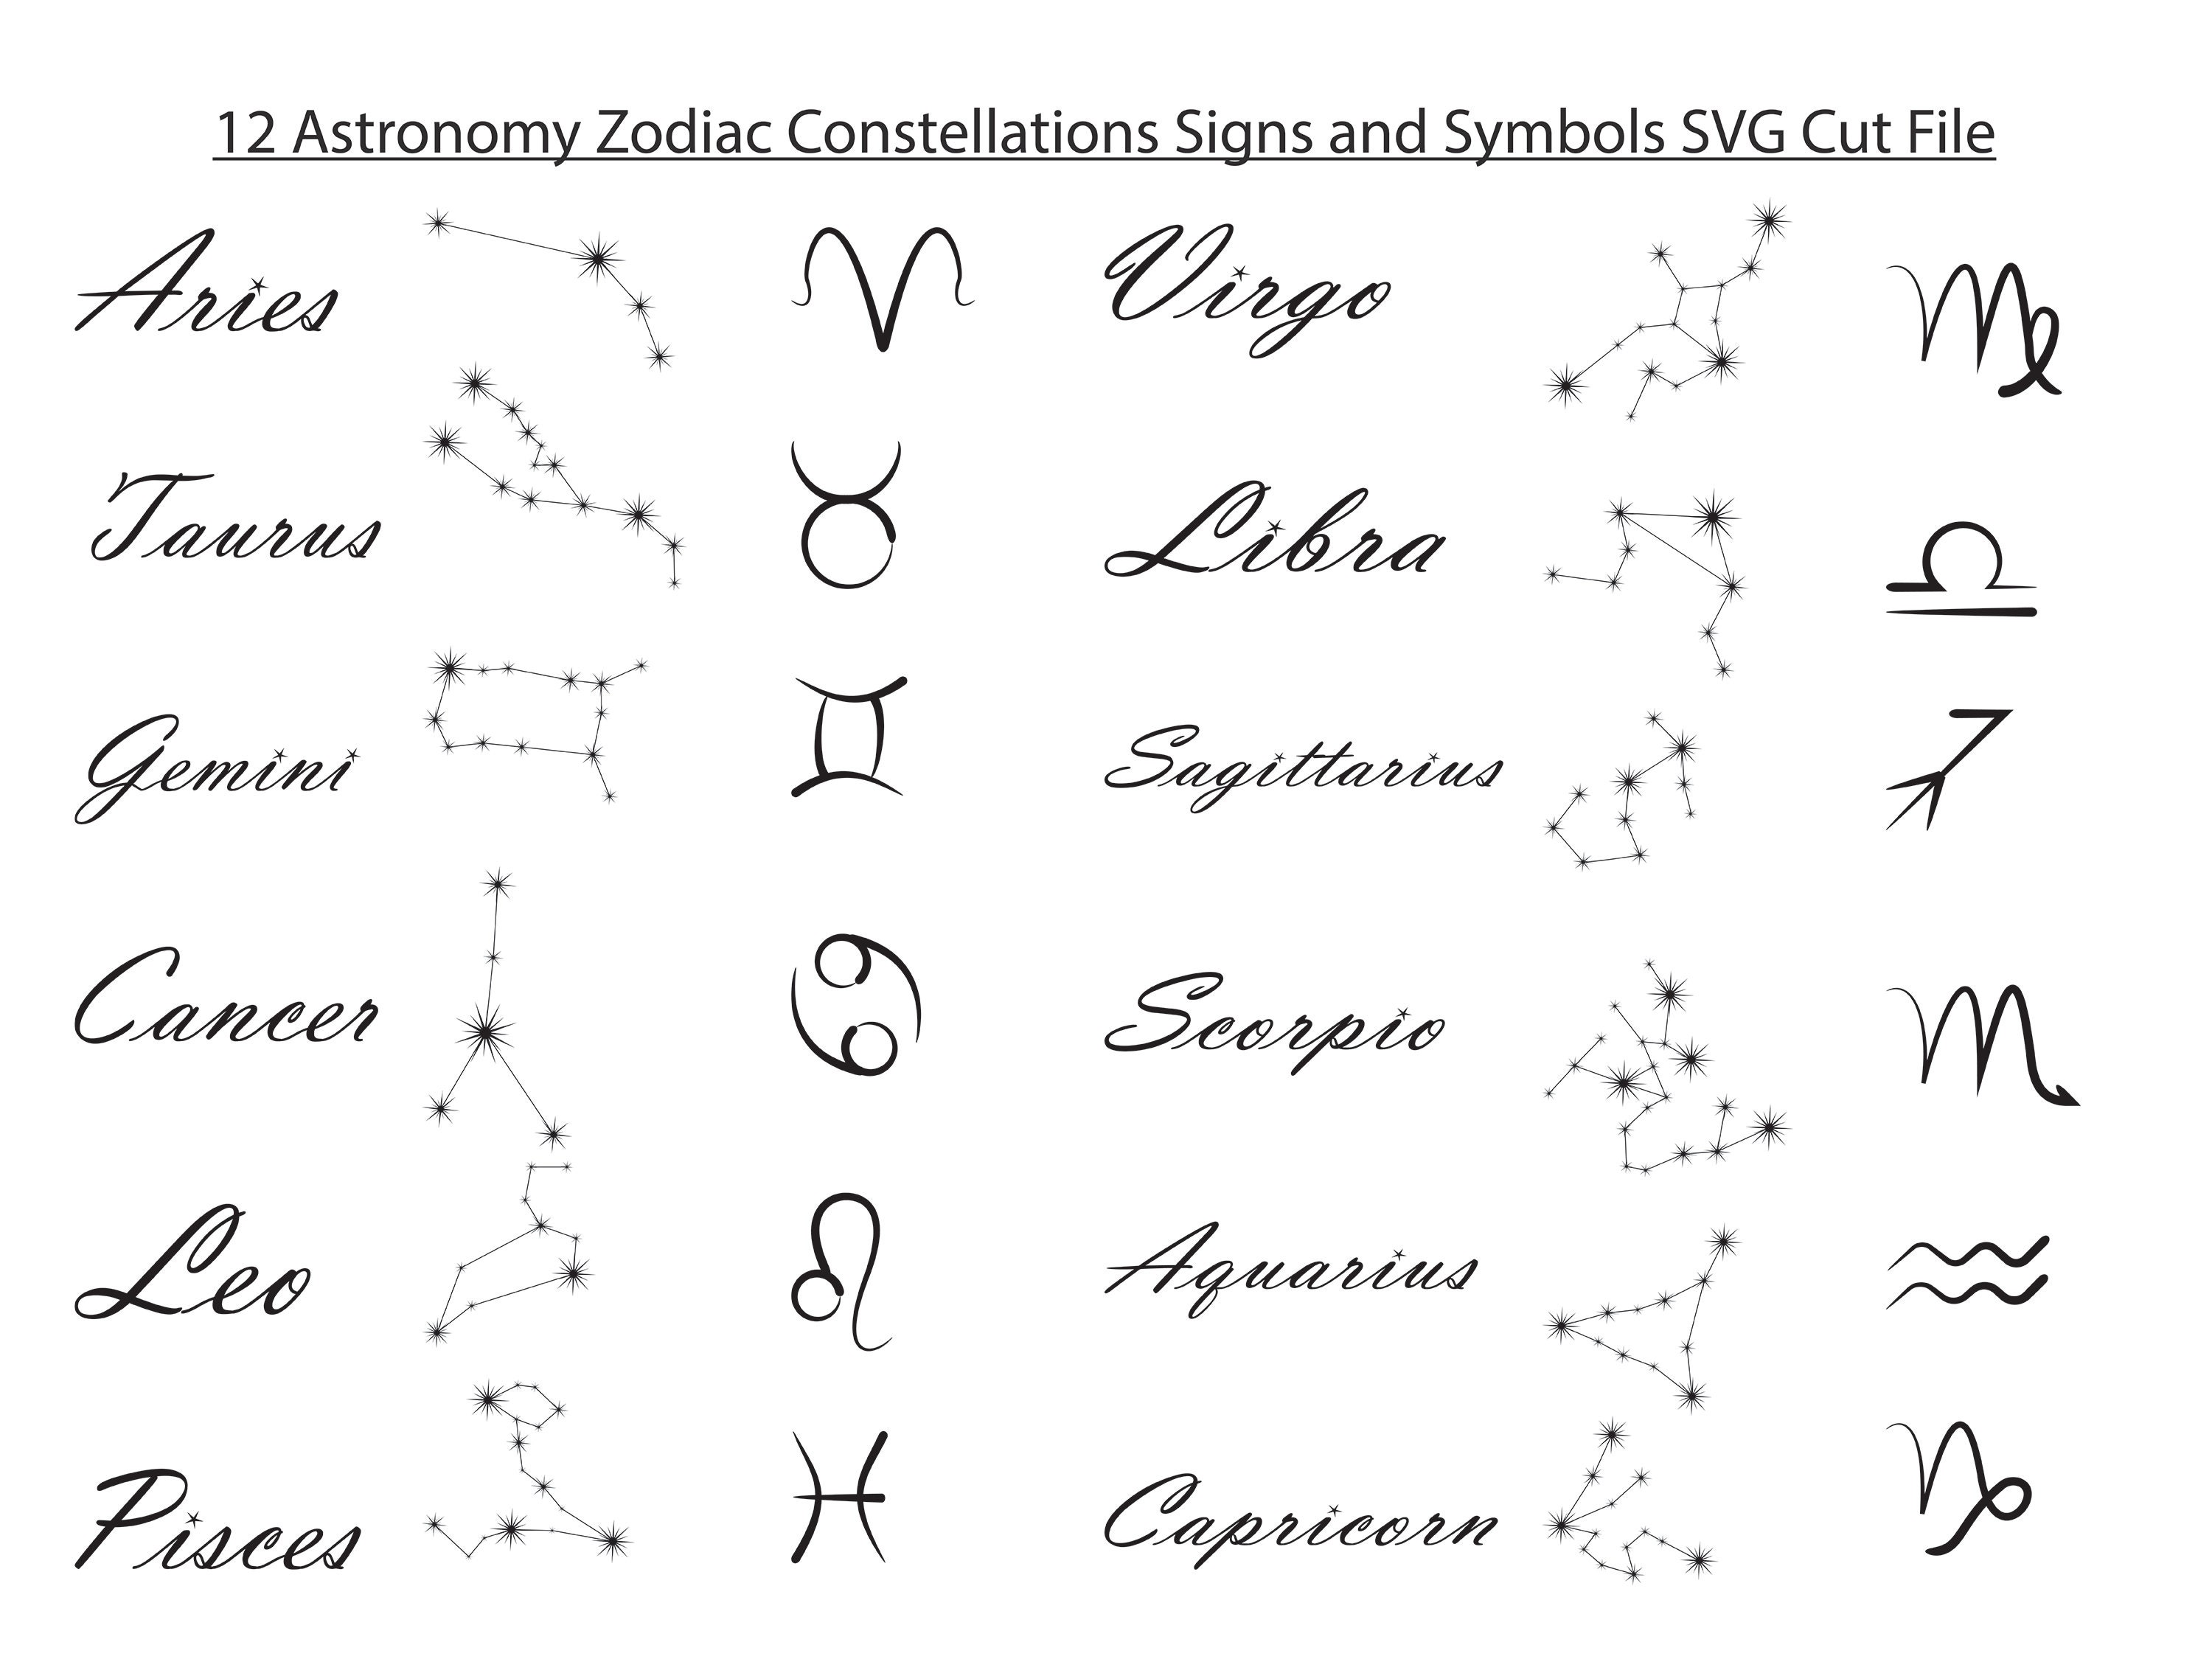 Astrology Symbols Zodiac Symbols Astrology Horoscope SVG | Etsy